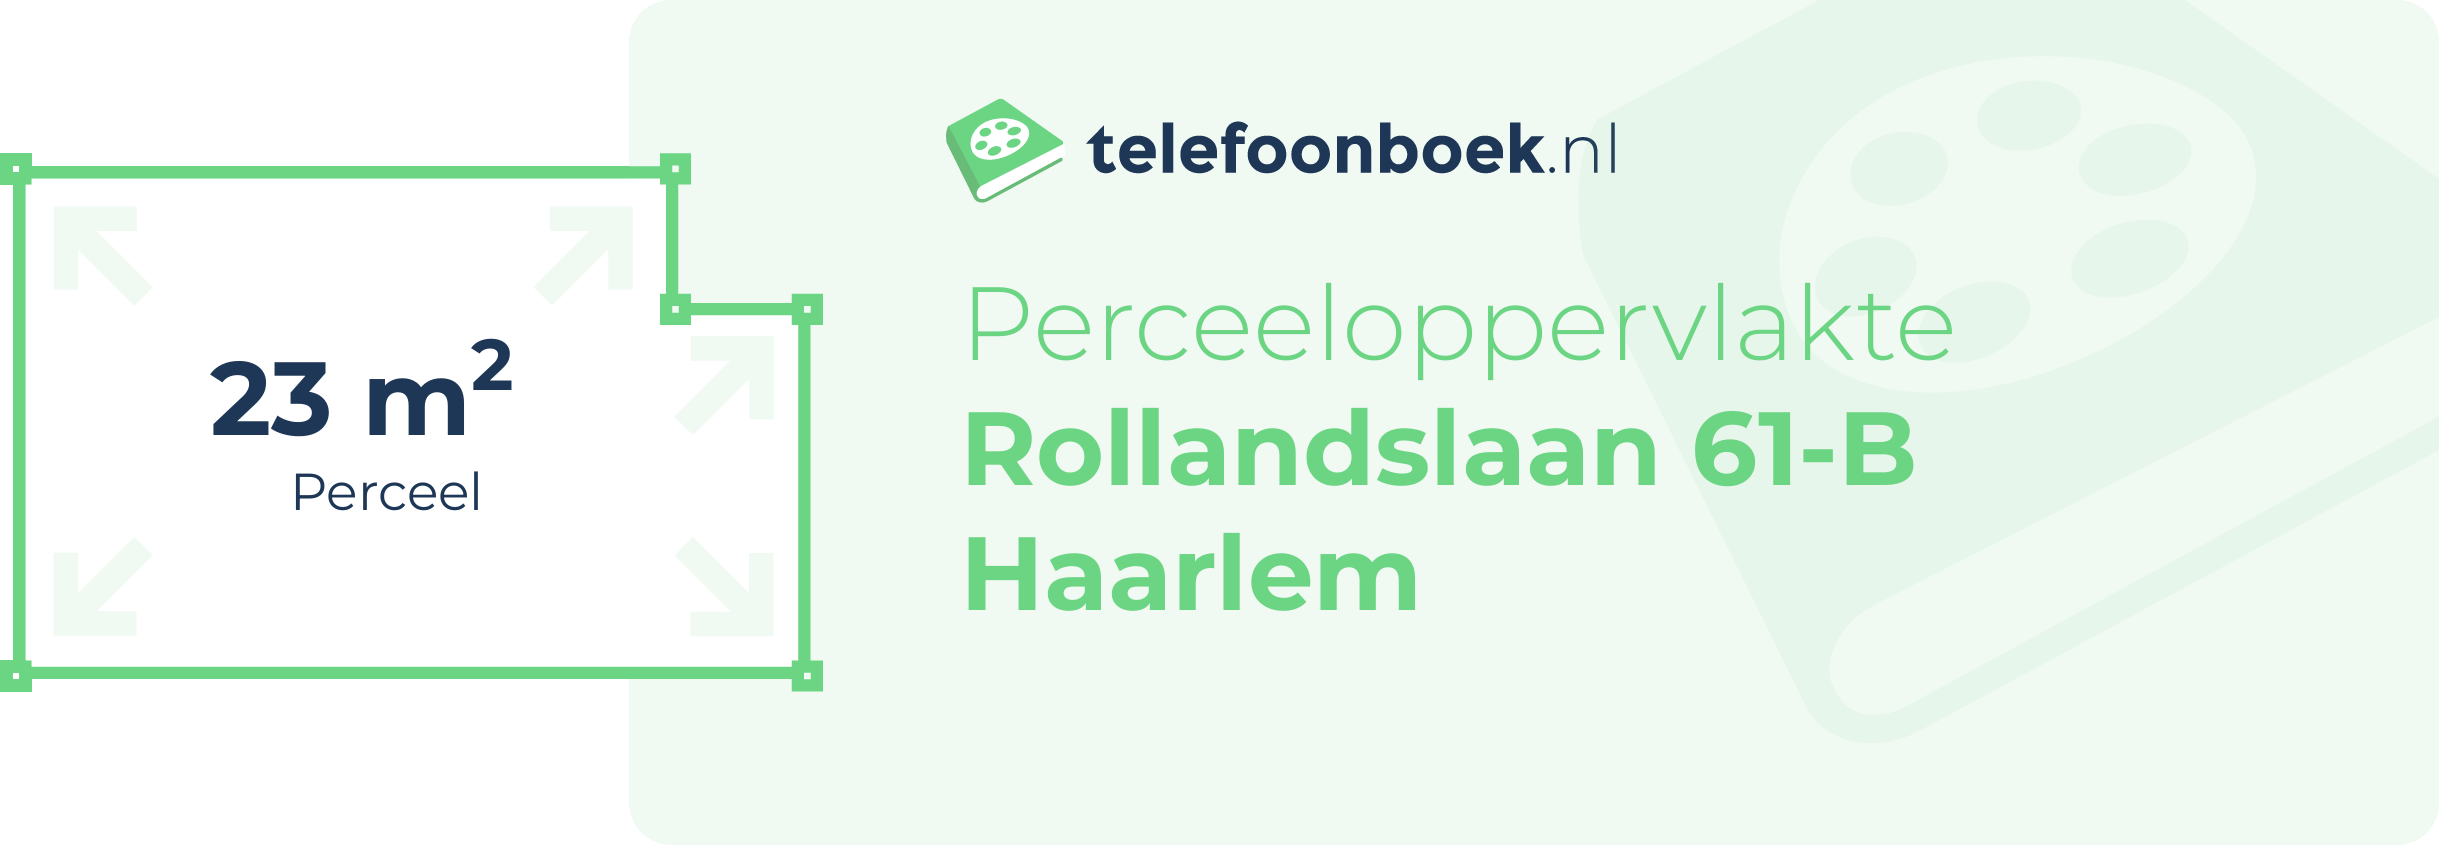 Perceeloppervlakte Rollandslaan 61-B Haarlem